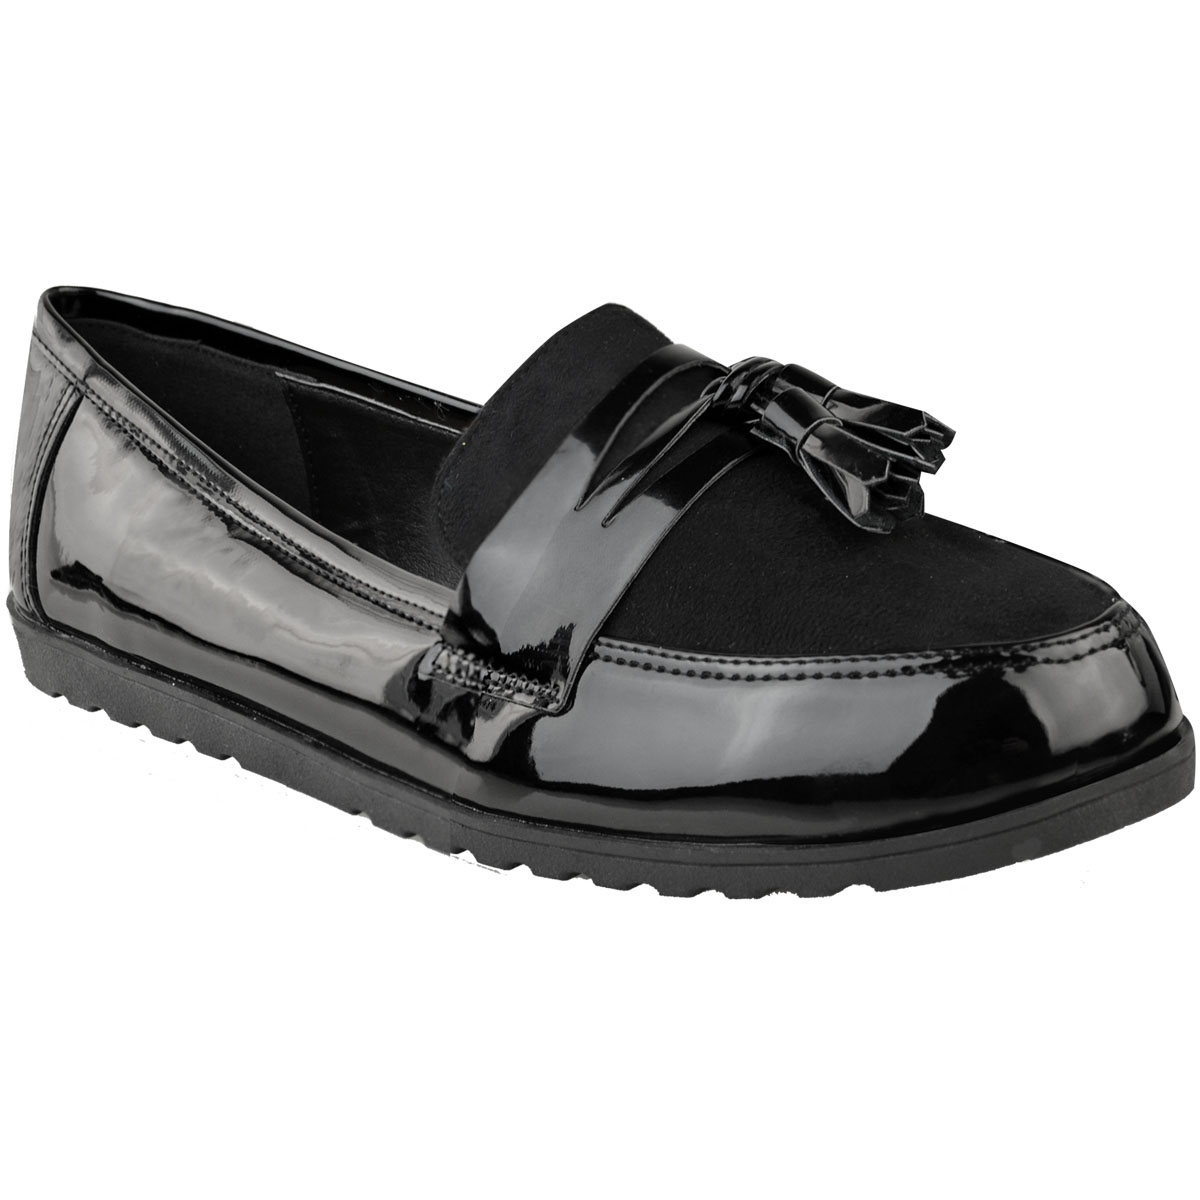 Girls Black School Shoes Slip On Loafer Comfortable Flats Infant Kids ...